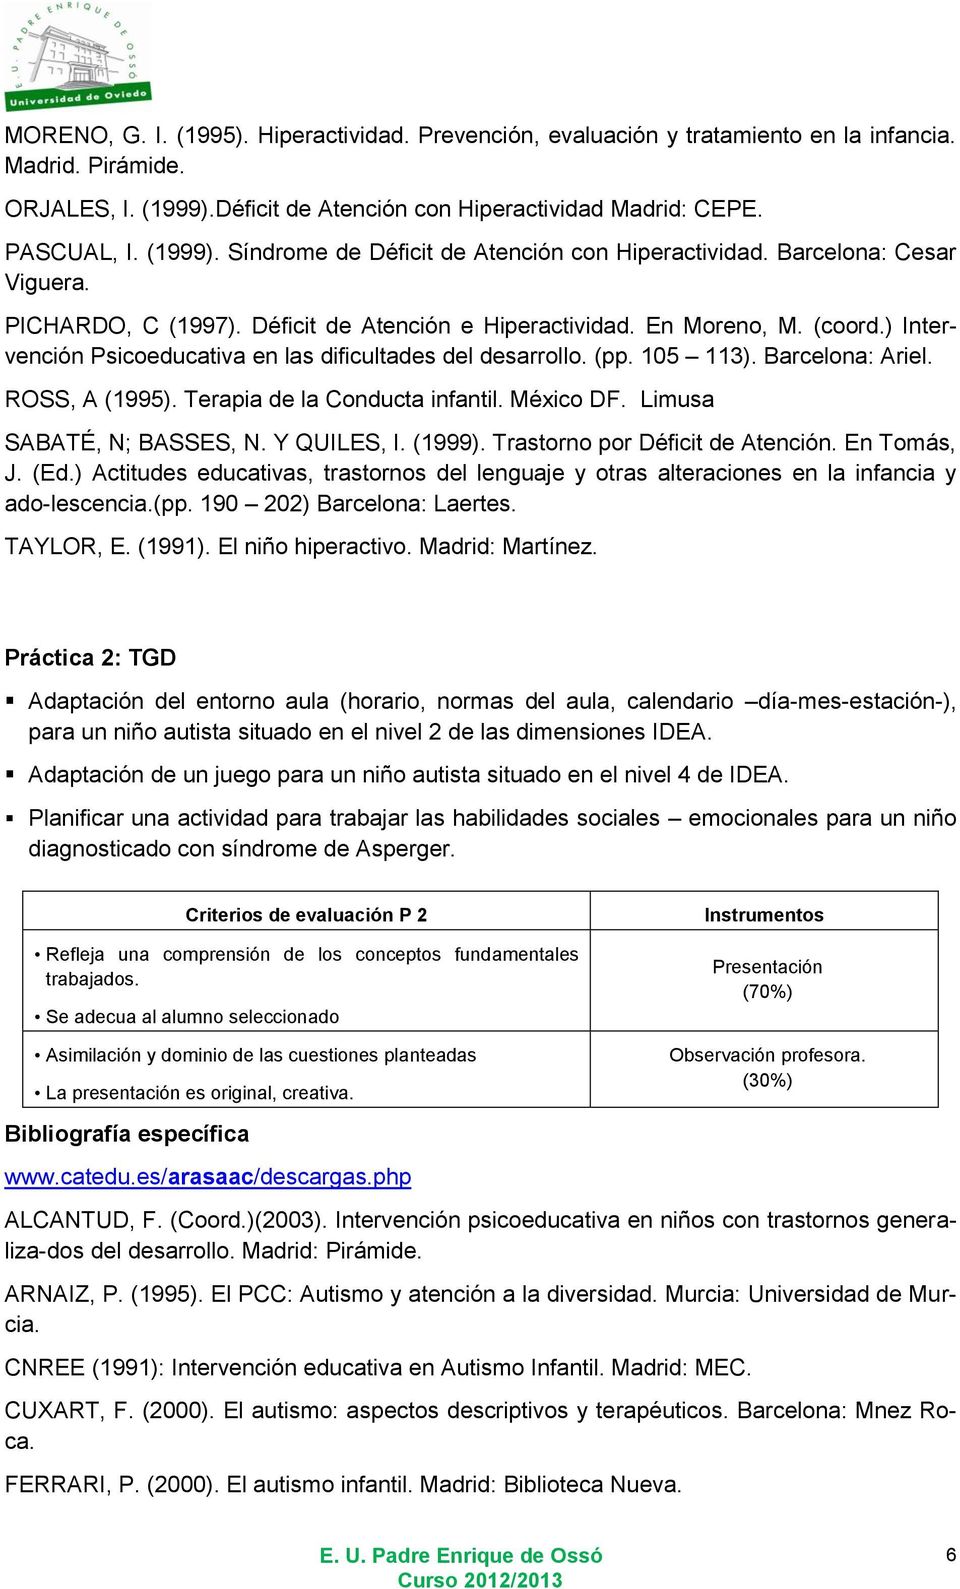 Barcelona: Ariel. ROSS, A (1995). Terapia de la Conducta infantil. México DF. Limusa SABATÉ, N; BASSES, N. Y QUILES, I. (1999). Trastorno por Déficit de Atención. En Tomás, J. (Ed.